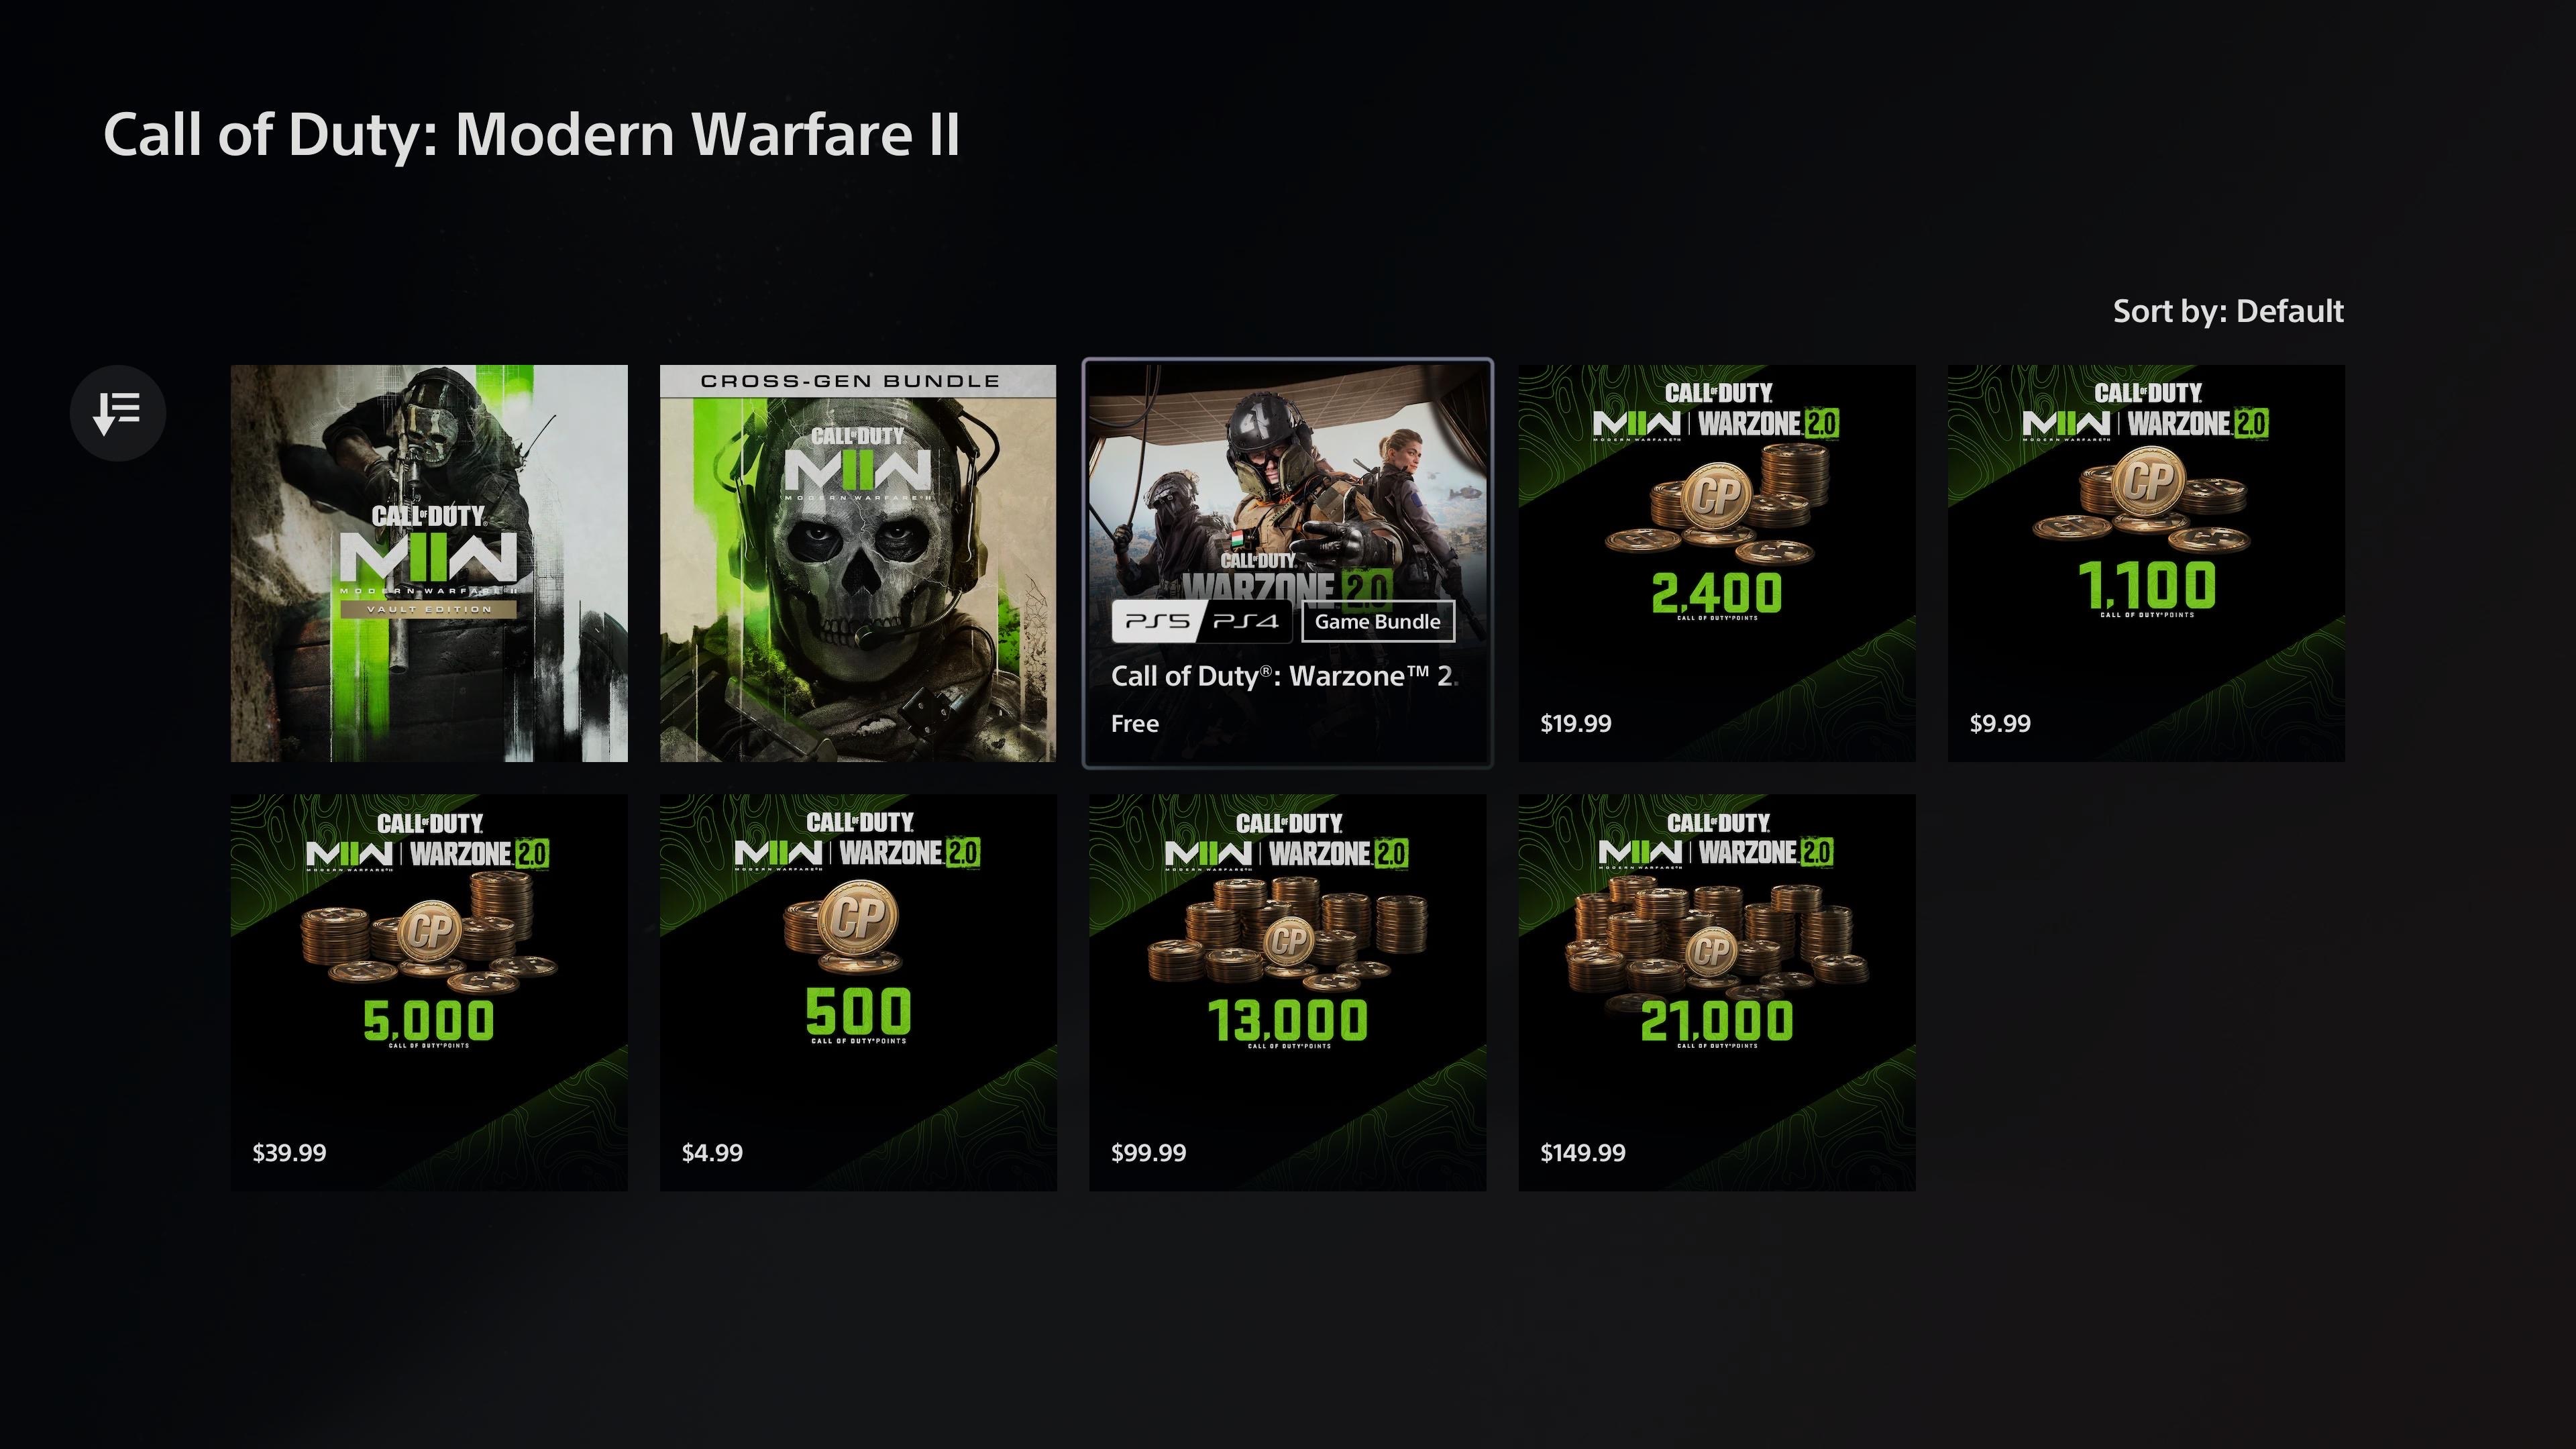 How Do You Access Warzone 2.0 in Modern Warfare 2 3